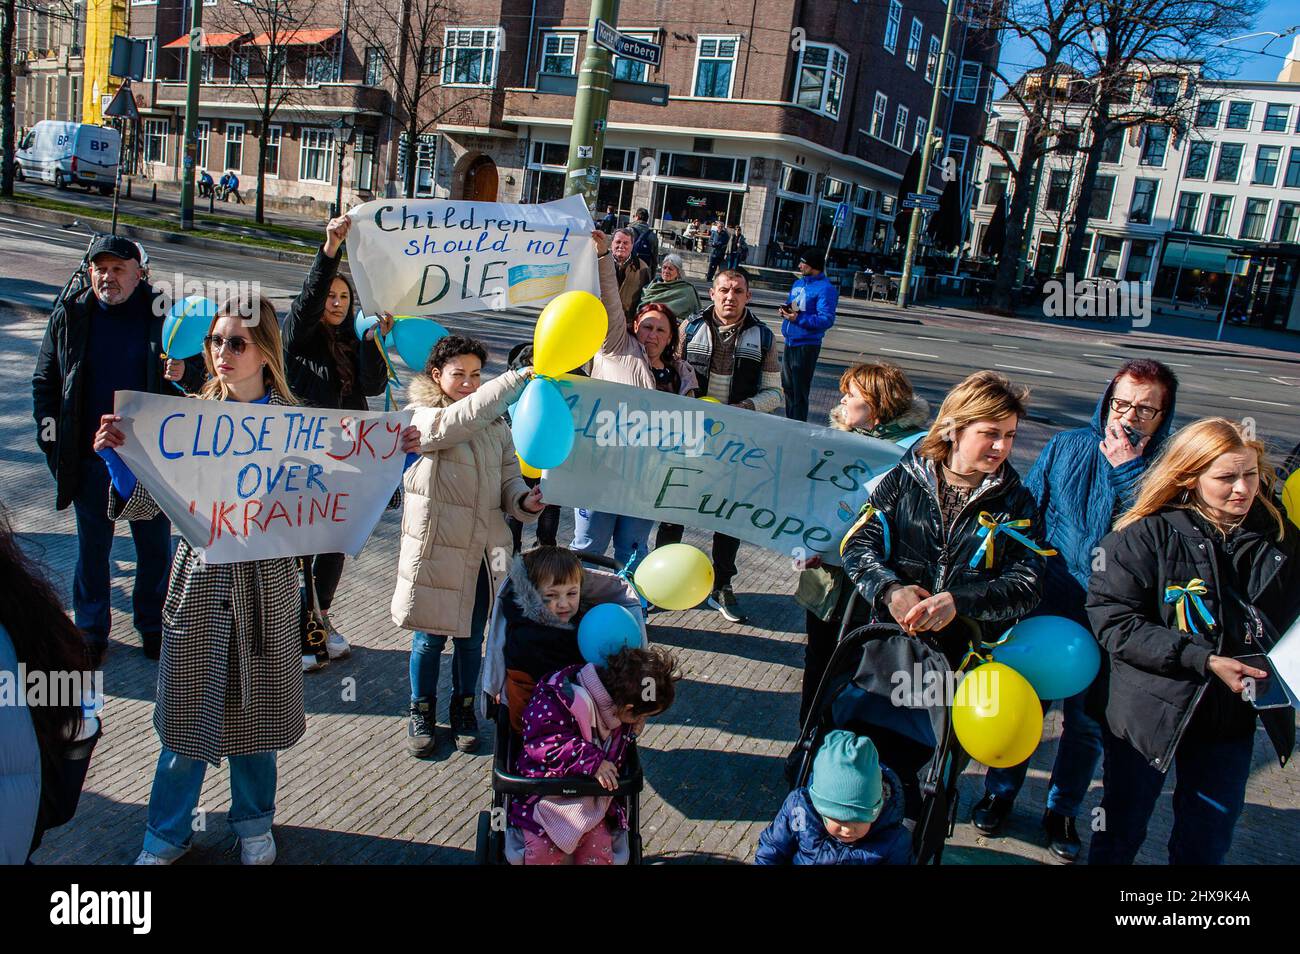 Eine Gruppe ukrainischer Frauen mit ihren Kindern sah während der Demonstration Plakate halten, um die Ukraine zu unterstützen. Das ukrainische Volk versammelte sich vor dem Repräsentantenbüro der Europäischen Kommission in Den Haag, um weiterhin gegen Putins Invasion zu protestieren und für die EU zu appellieren, ihren Beitrittsantrag zu beschleunigen, da die Niederlande den Prozess beschleunigen wollten, forderten sie die gesamte Gemeinschaft auf, sich an der Beeinflussung der offiziellen Position zu beteiligen. Ab heute werden die Staats- und Regierungschefs der EU über die Ukraineís-Anfrage diskutieren, wenn sie sich zwei Tage lang in der Nähe von Paris treffen. Stockfoto